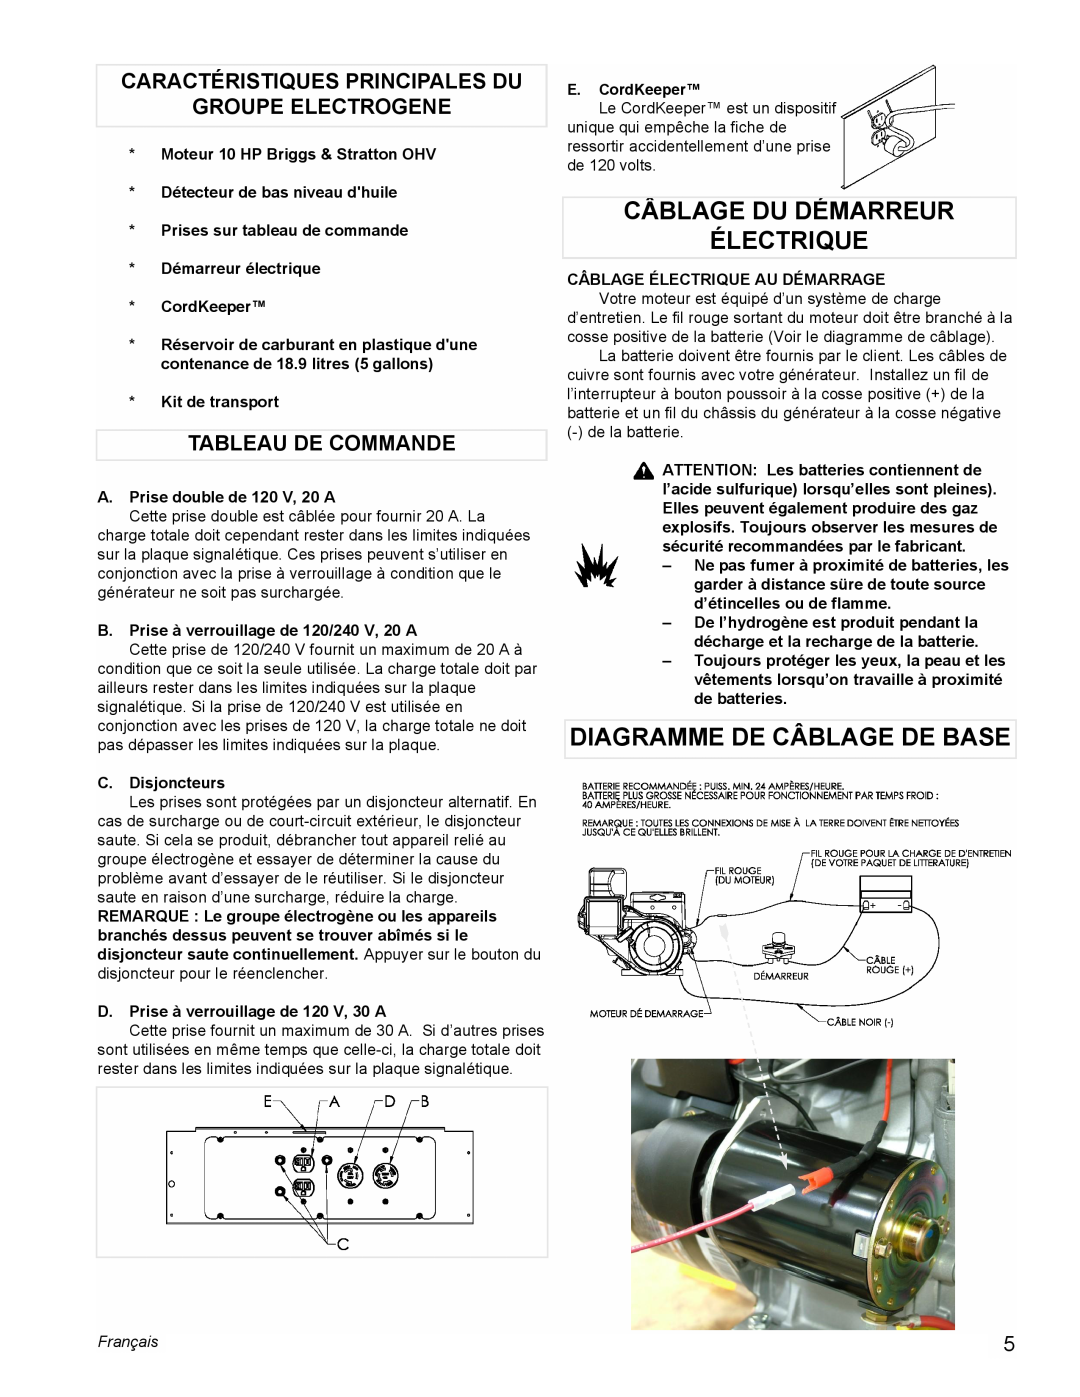 Powermate PM0545001 manual Câblage Du Démarreur Électrique, Diagramme De Câblage De Base, Tableau De Commande, Français 